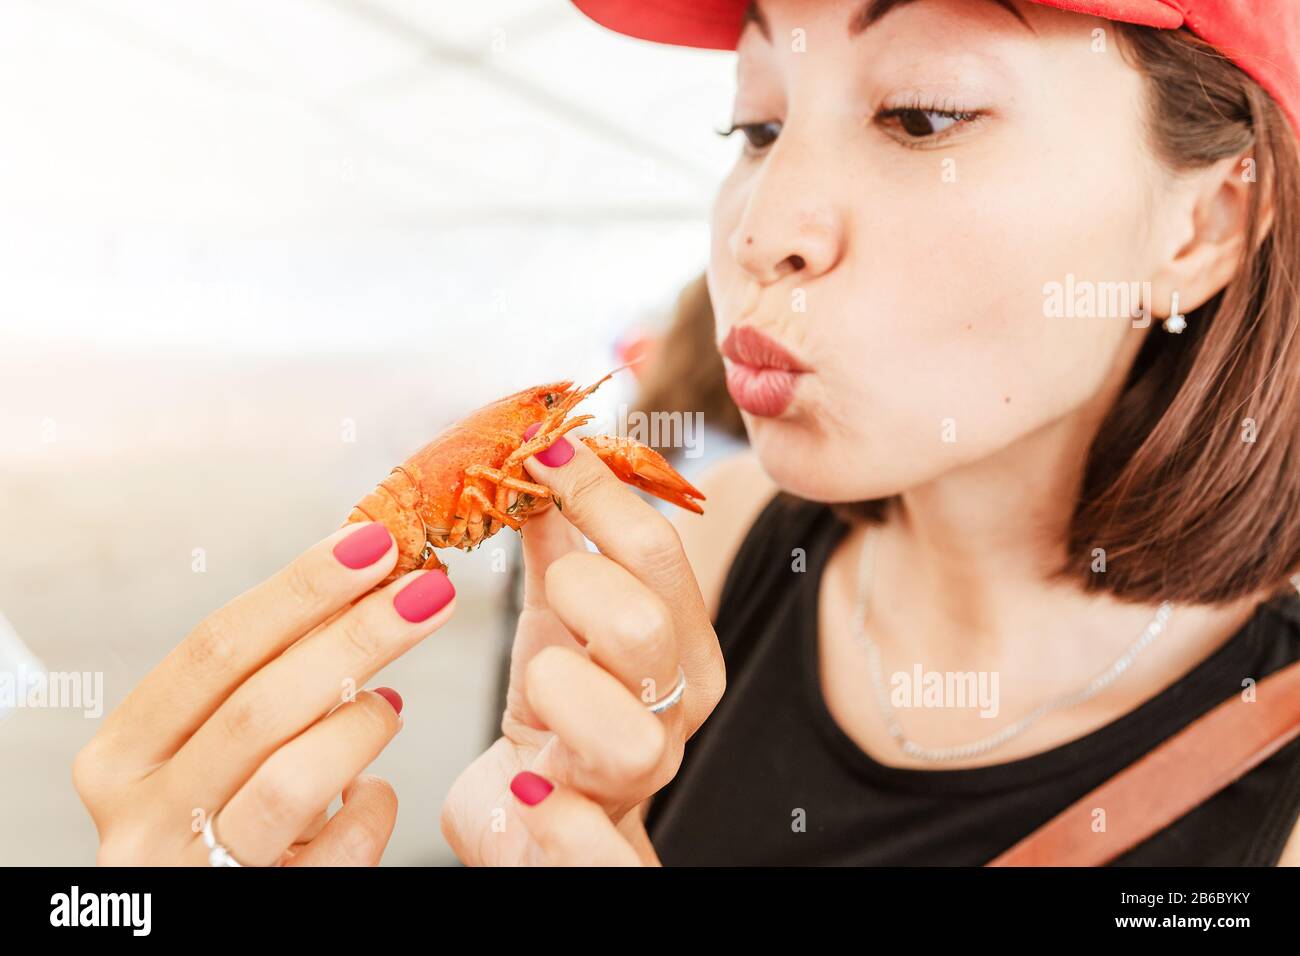 Jeune femme mangeant de délicieux écrevisses bouillies rouges ou du homard de la rivière à ramper. Cuisine locale et concept de fruits de mer Banque D'Images